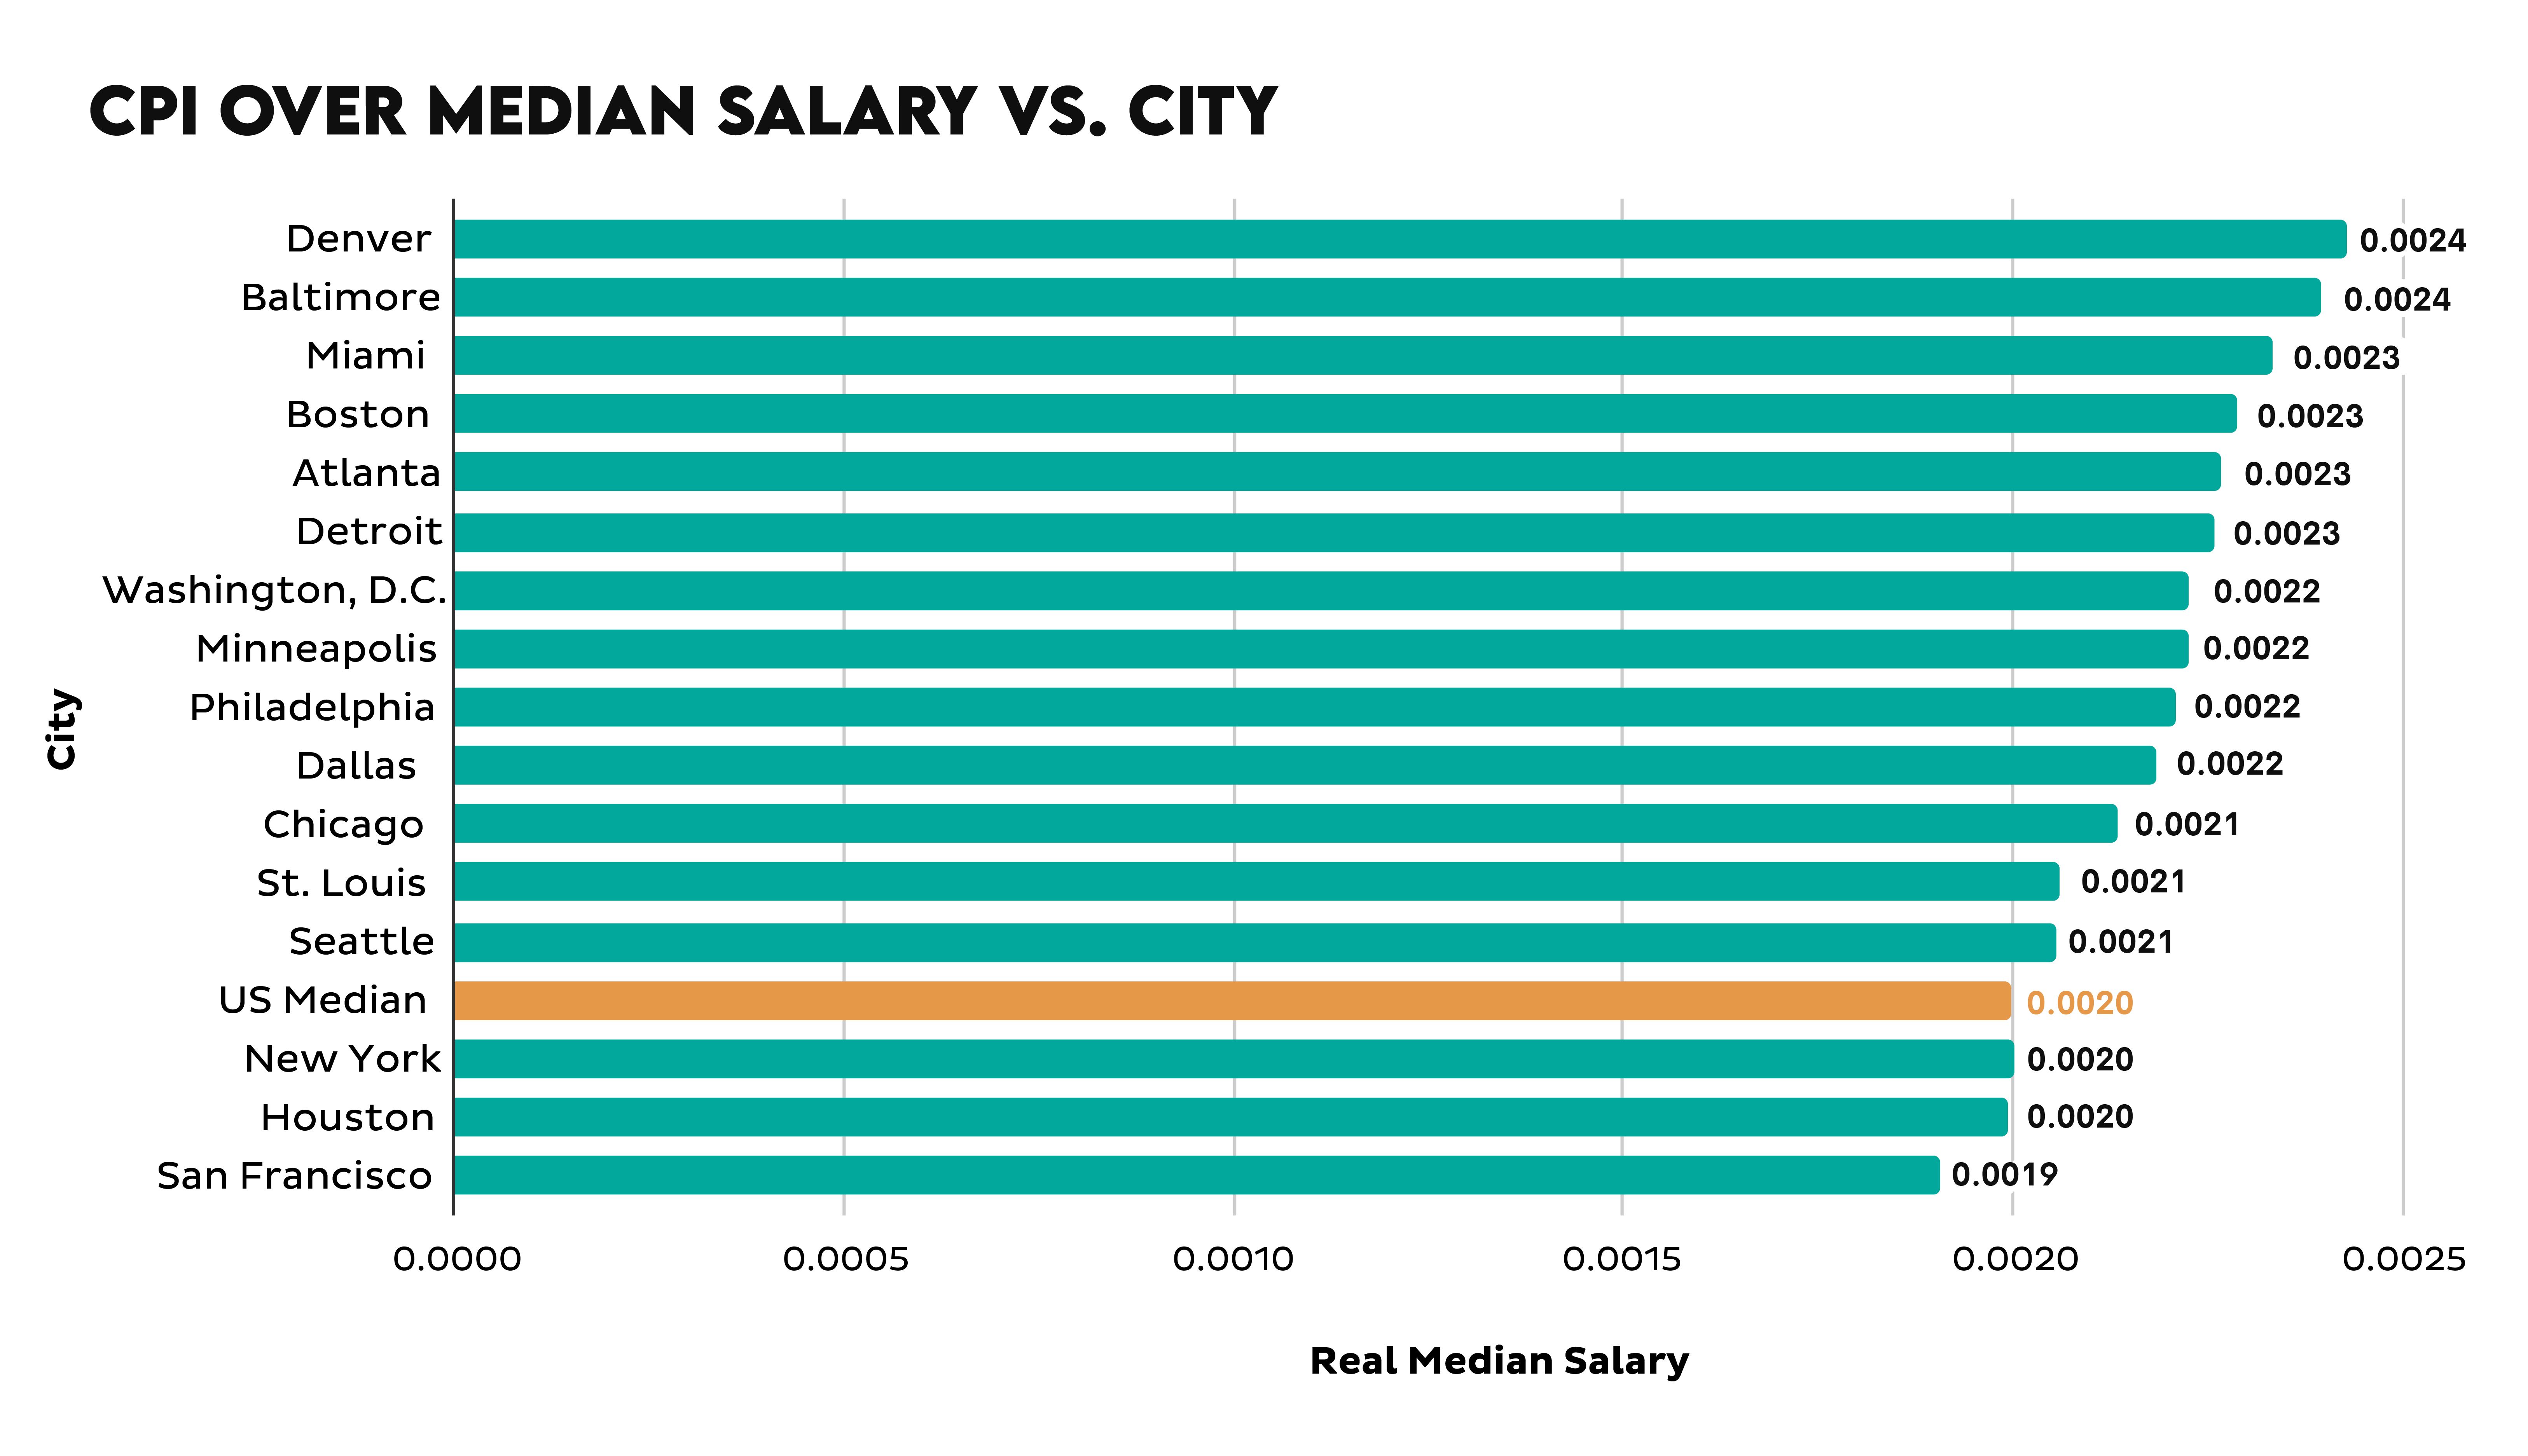 CPI over Median Salary vs. City